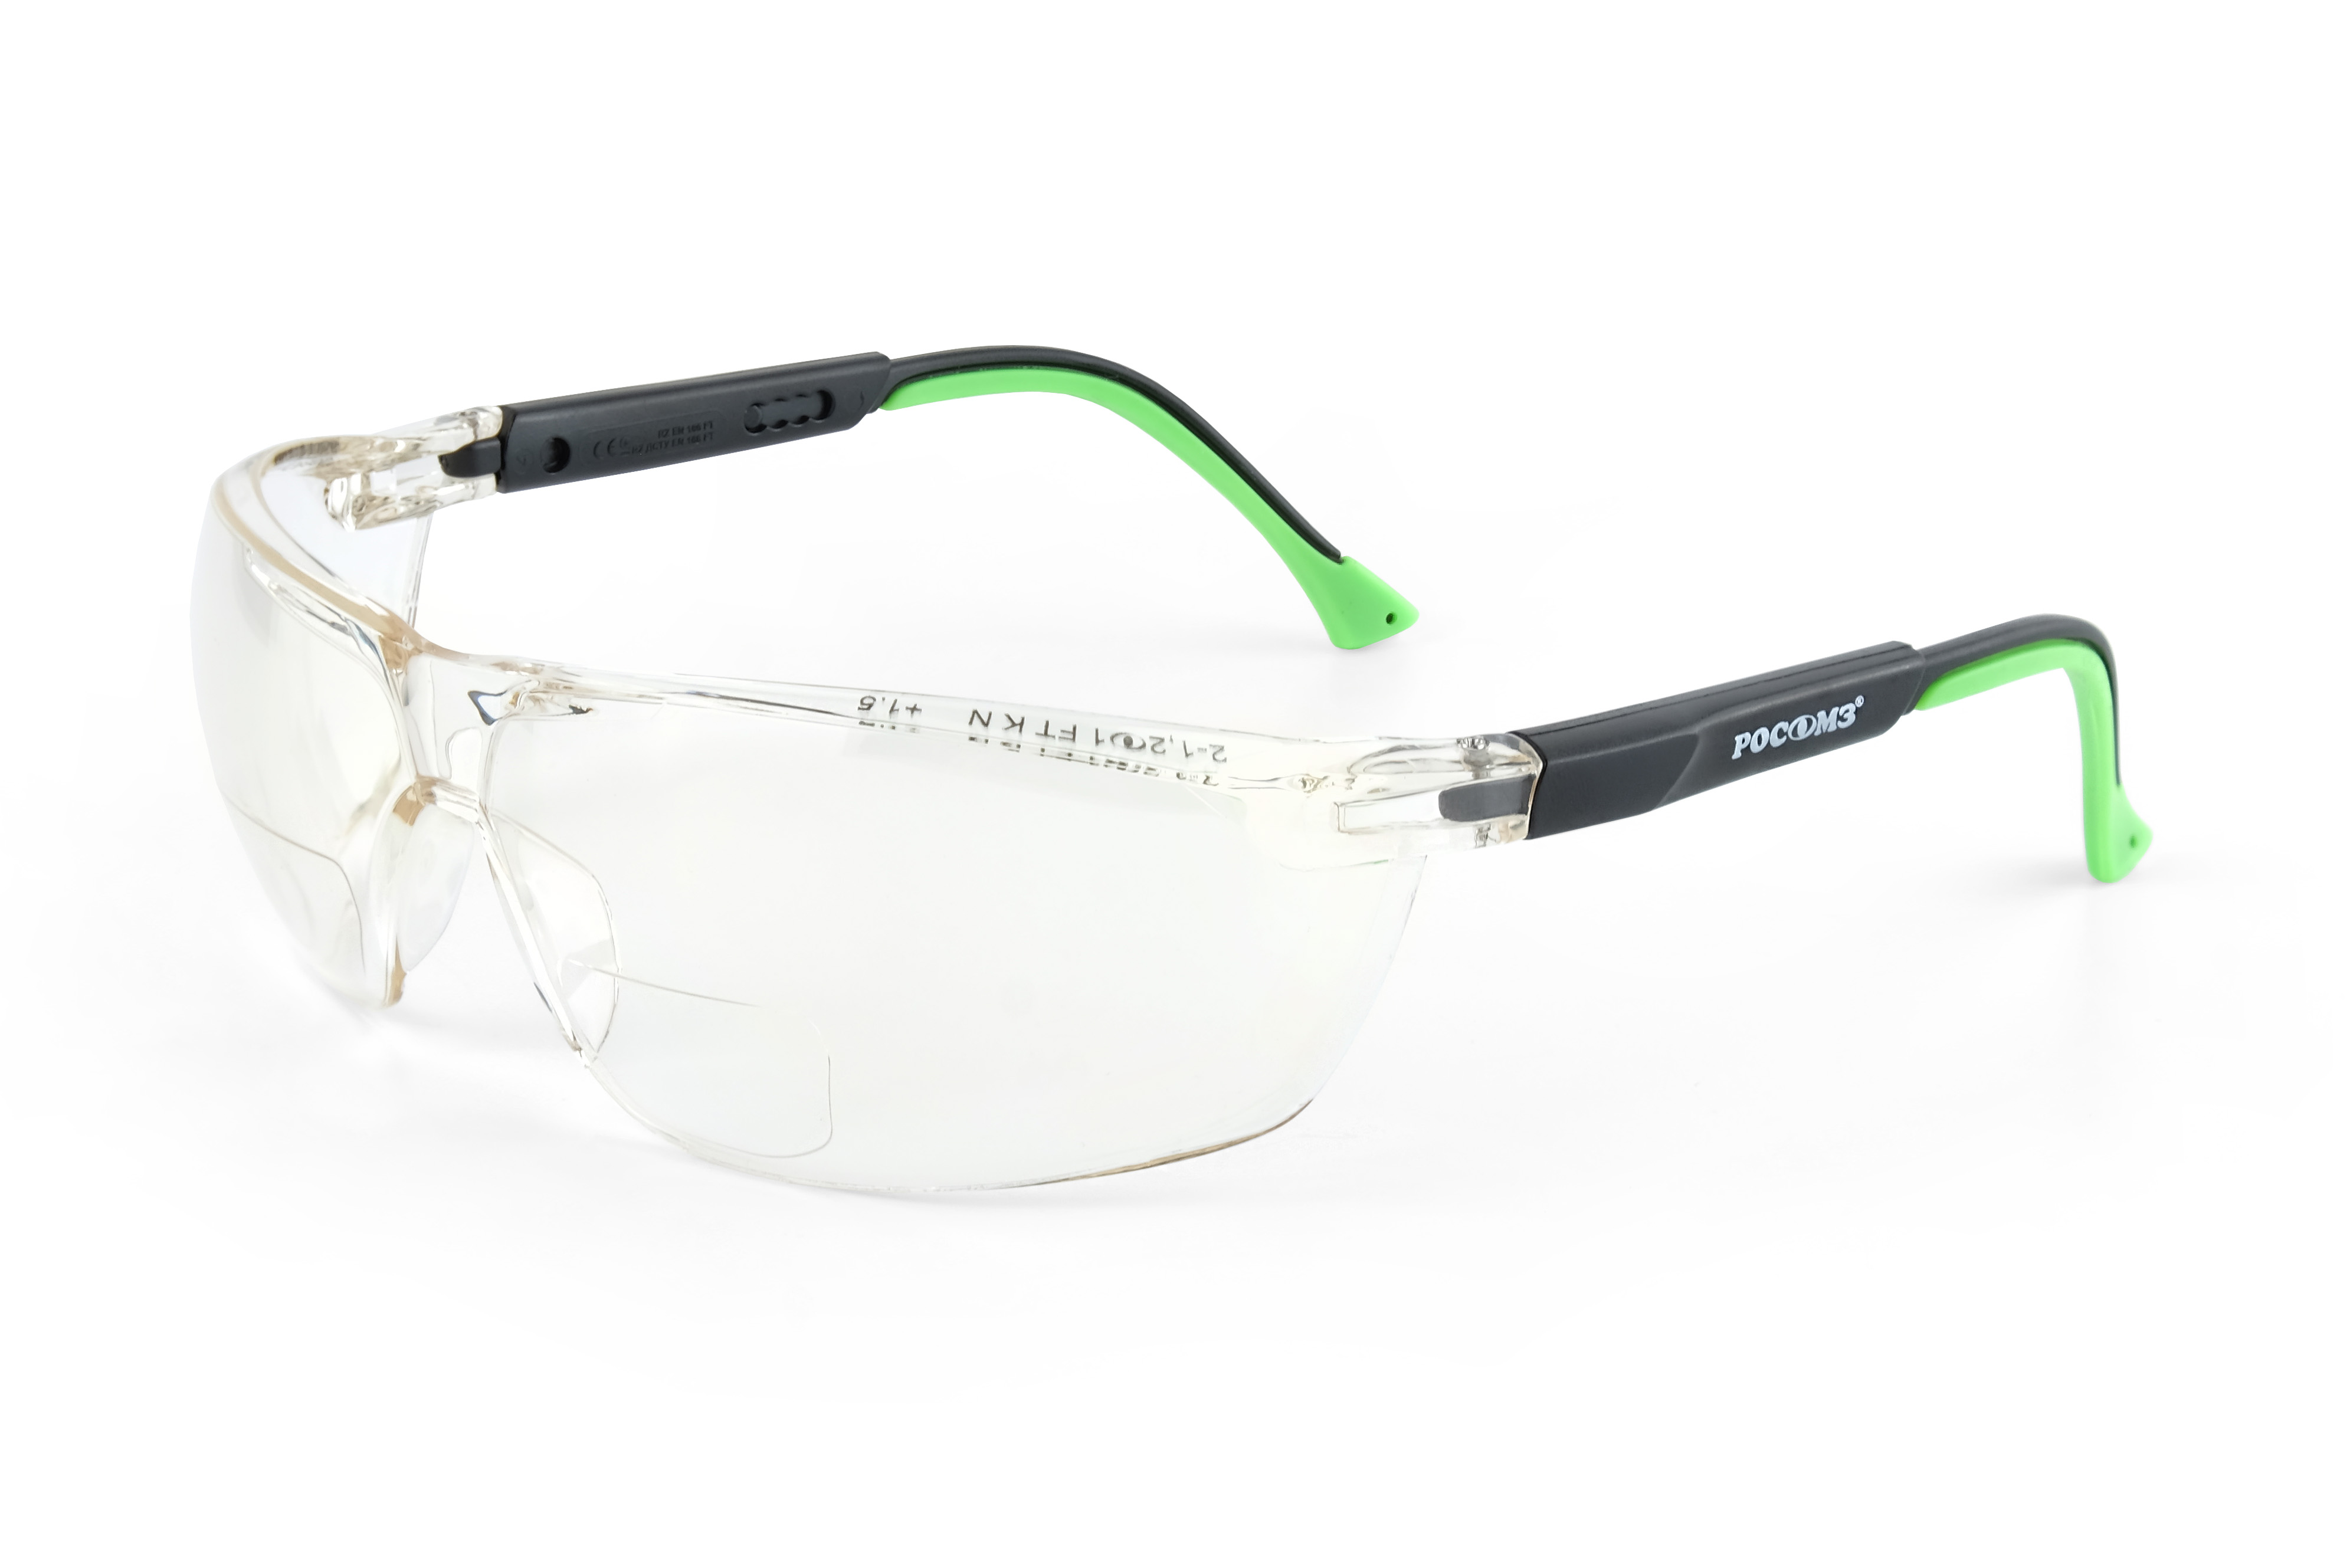 О78 АБСОЛЮТ plus Strong Glass (2-1,2 РС) очки защитные открытые (рефракция +1,5 дптр)